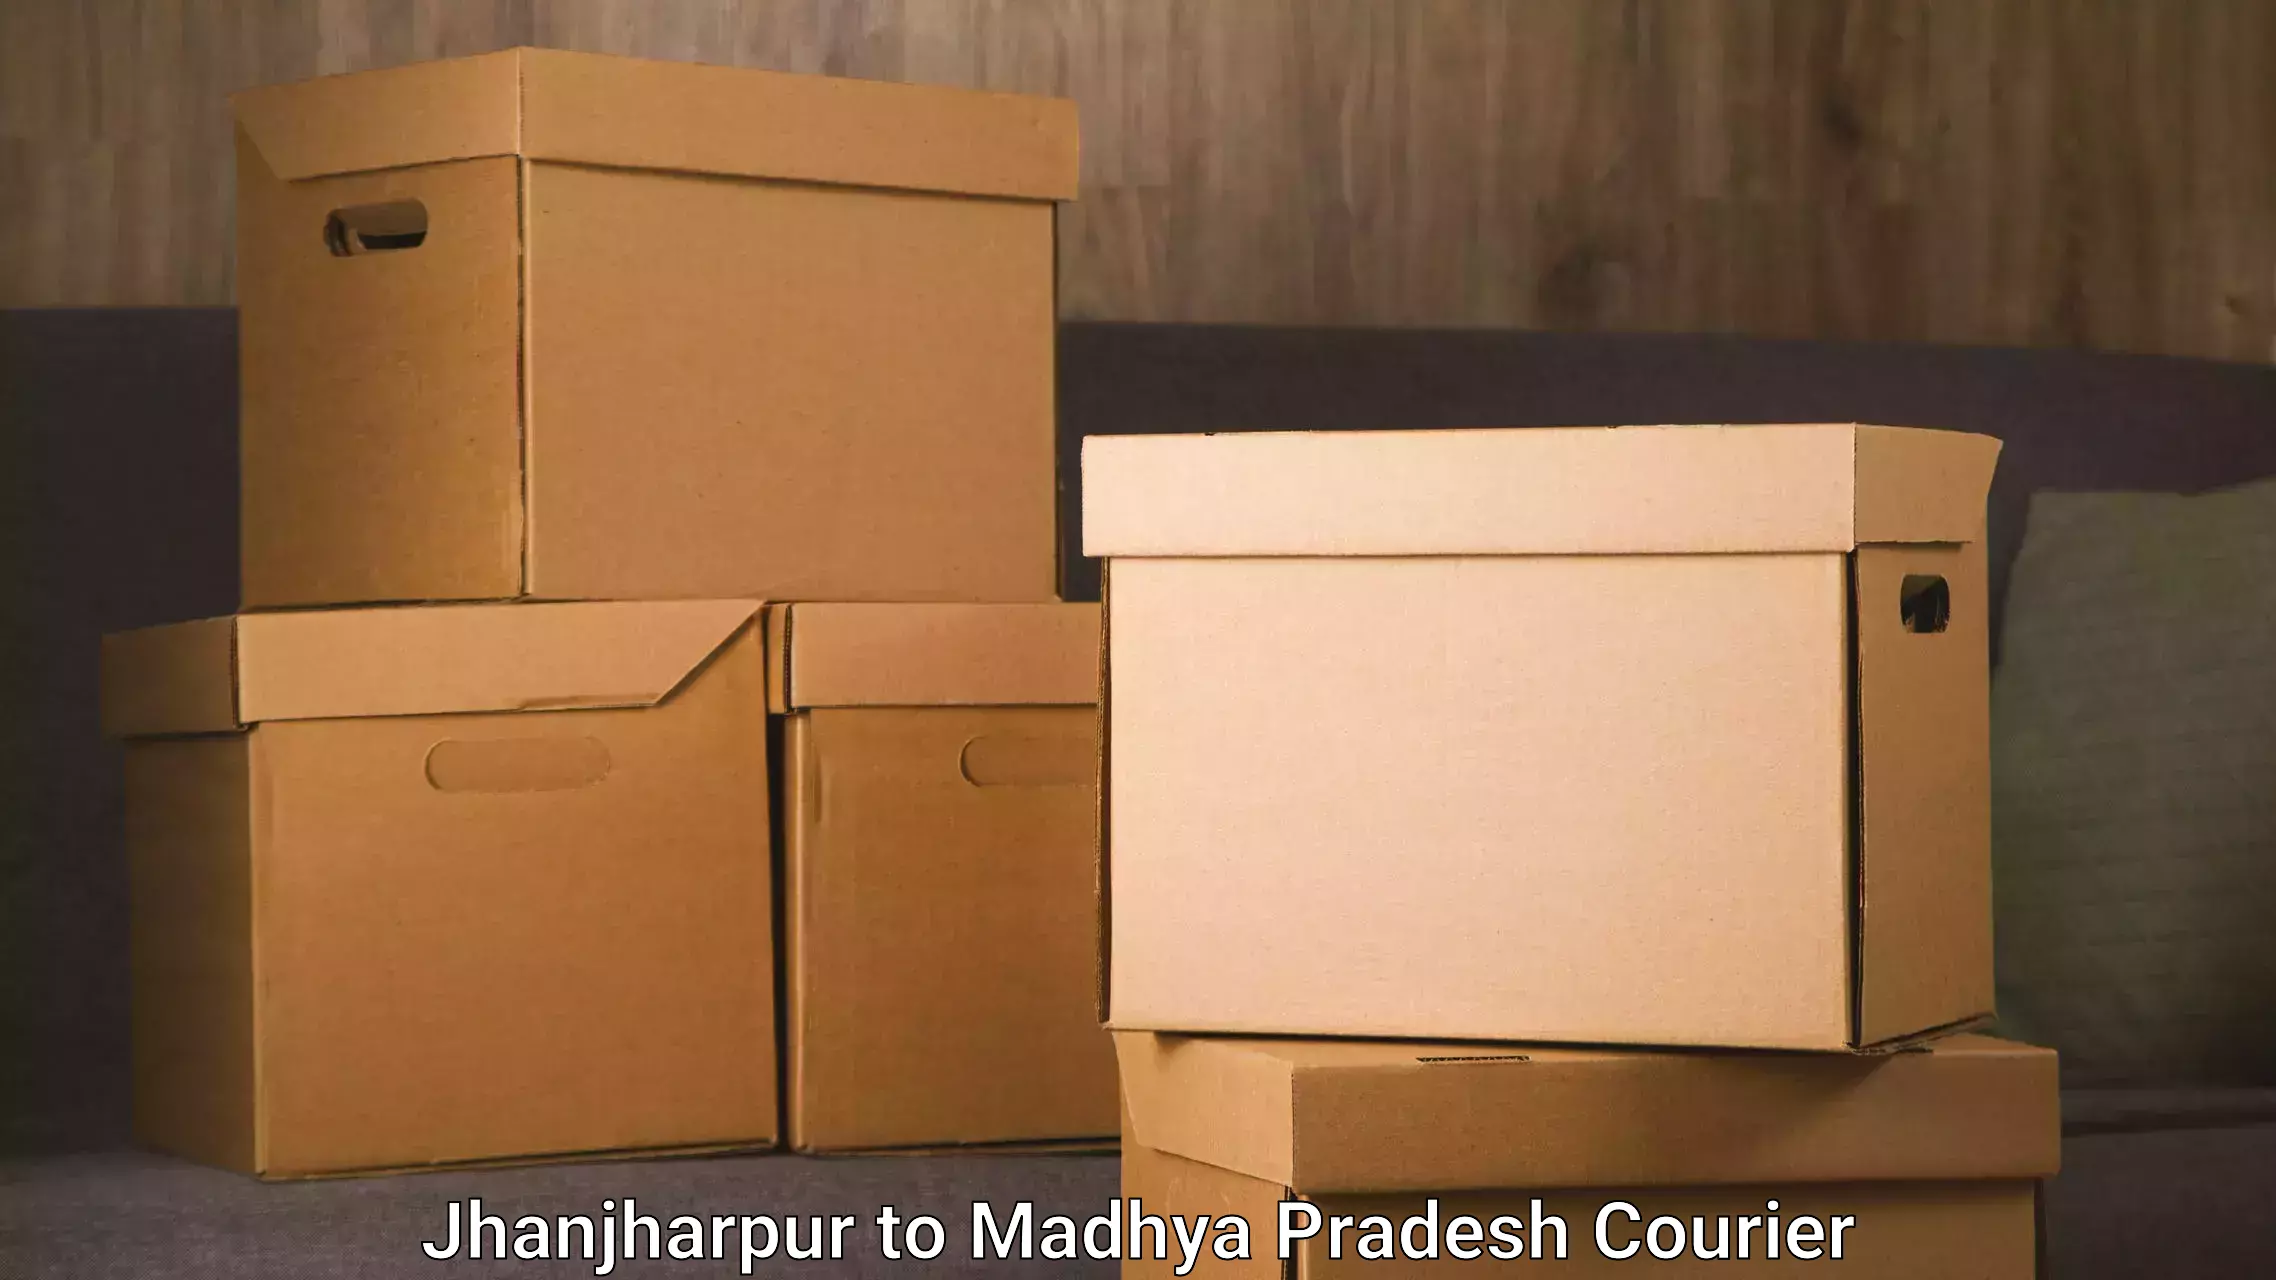 Door-to-door relocation services Jhanjharpur to Begumganj